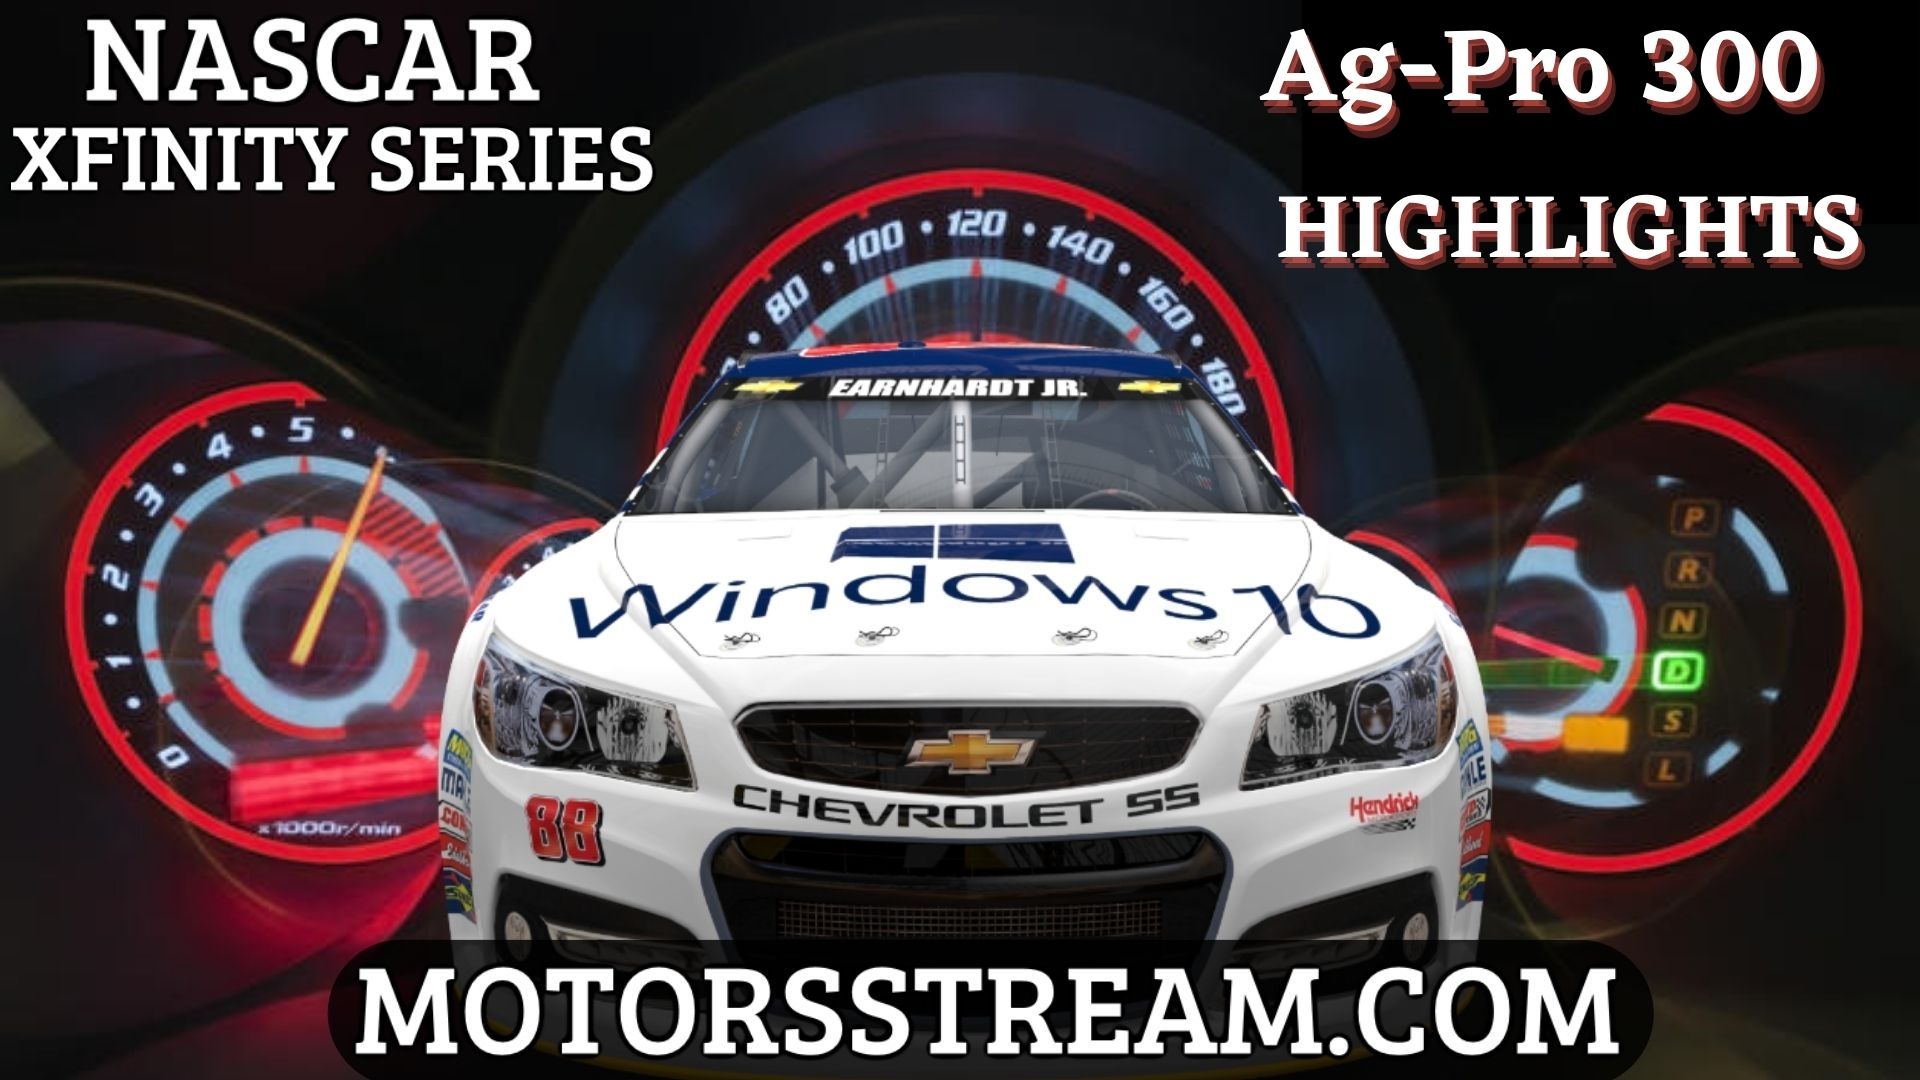 NASCAR Ag Pro 300 Highlights 2021 Xfinity Series